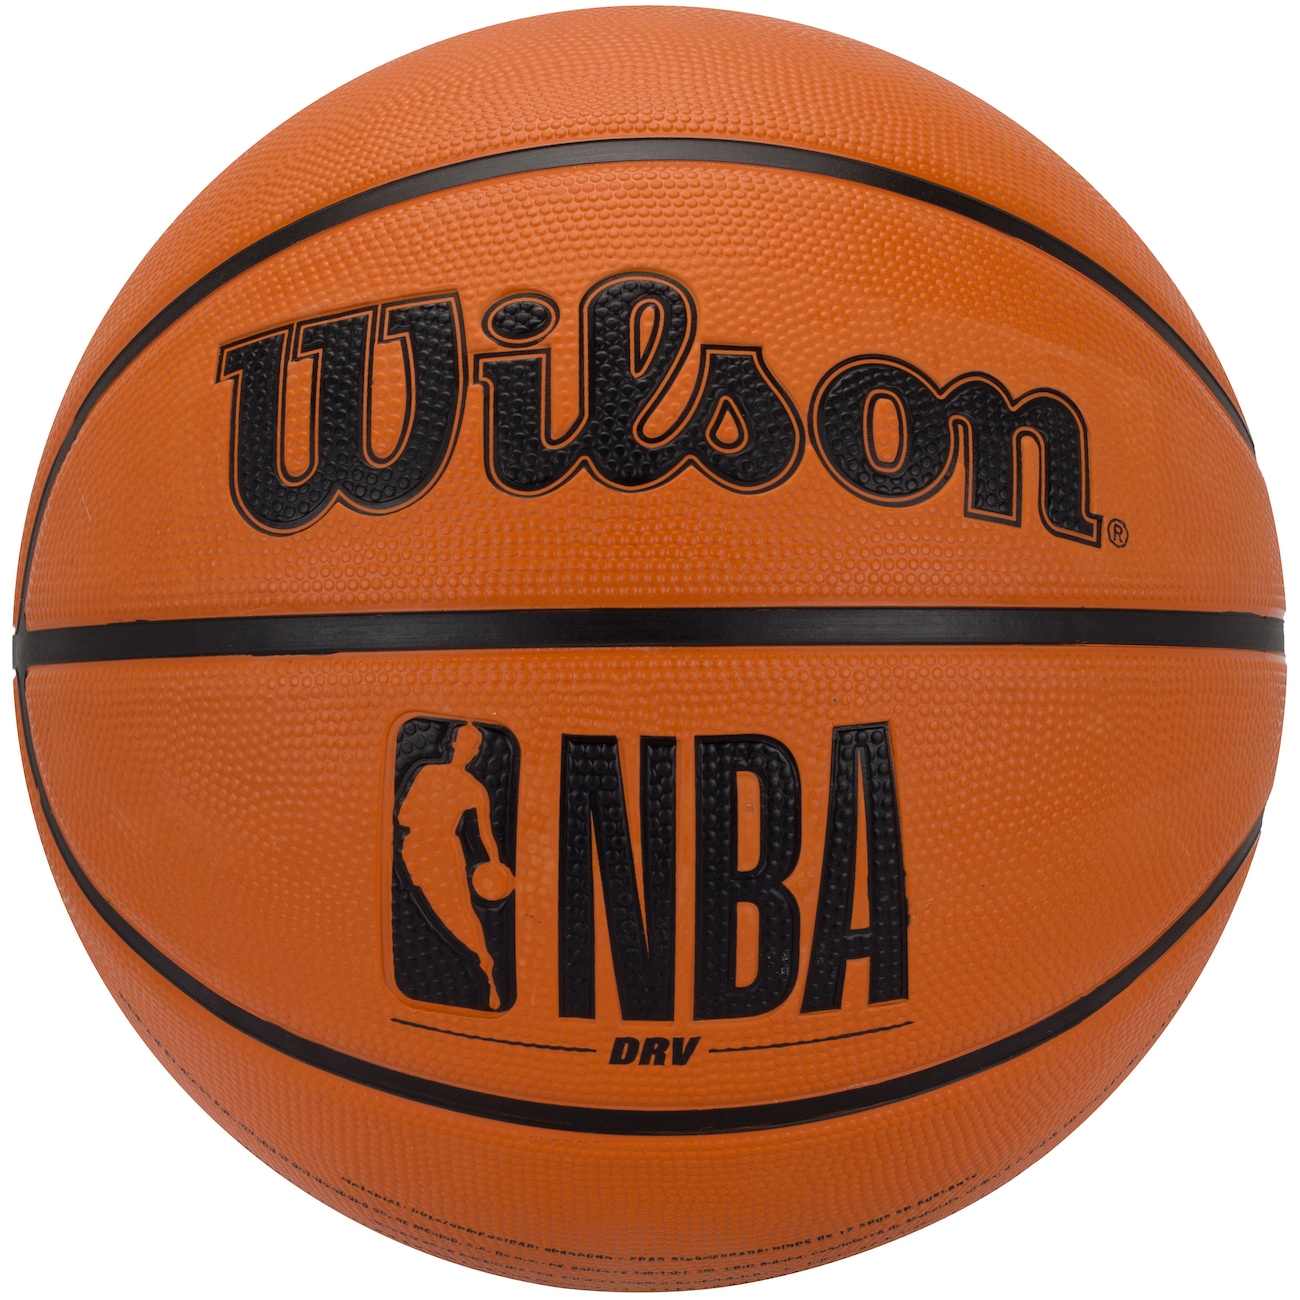 Bola de Basquete Spalding NBA All Star